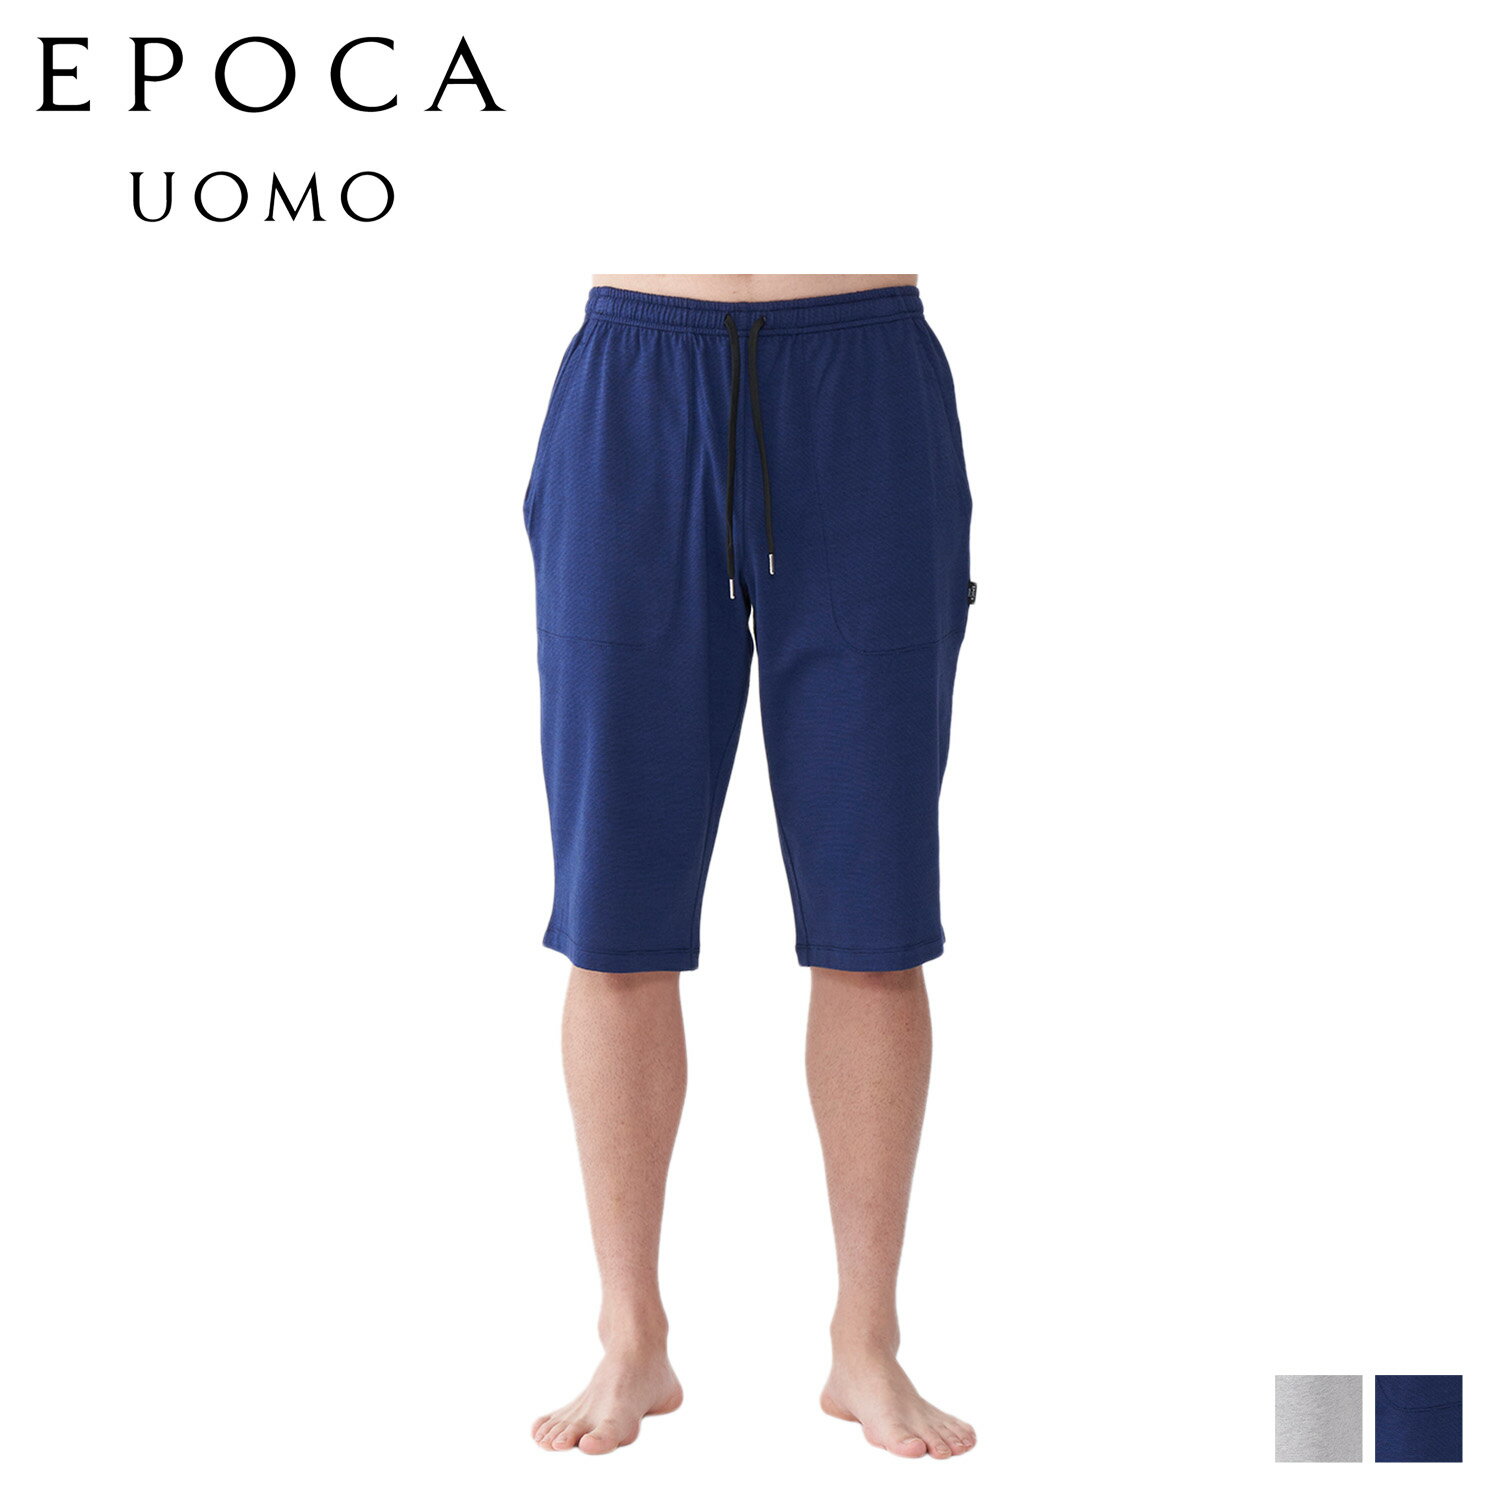 EPOCA UOMO HALF PANTS エポカ ウォモ ハーフパンツ ショートパンツ パジャマ ホームウェア ルームウェア メンズ グレー ネイビー 0397-75